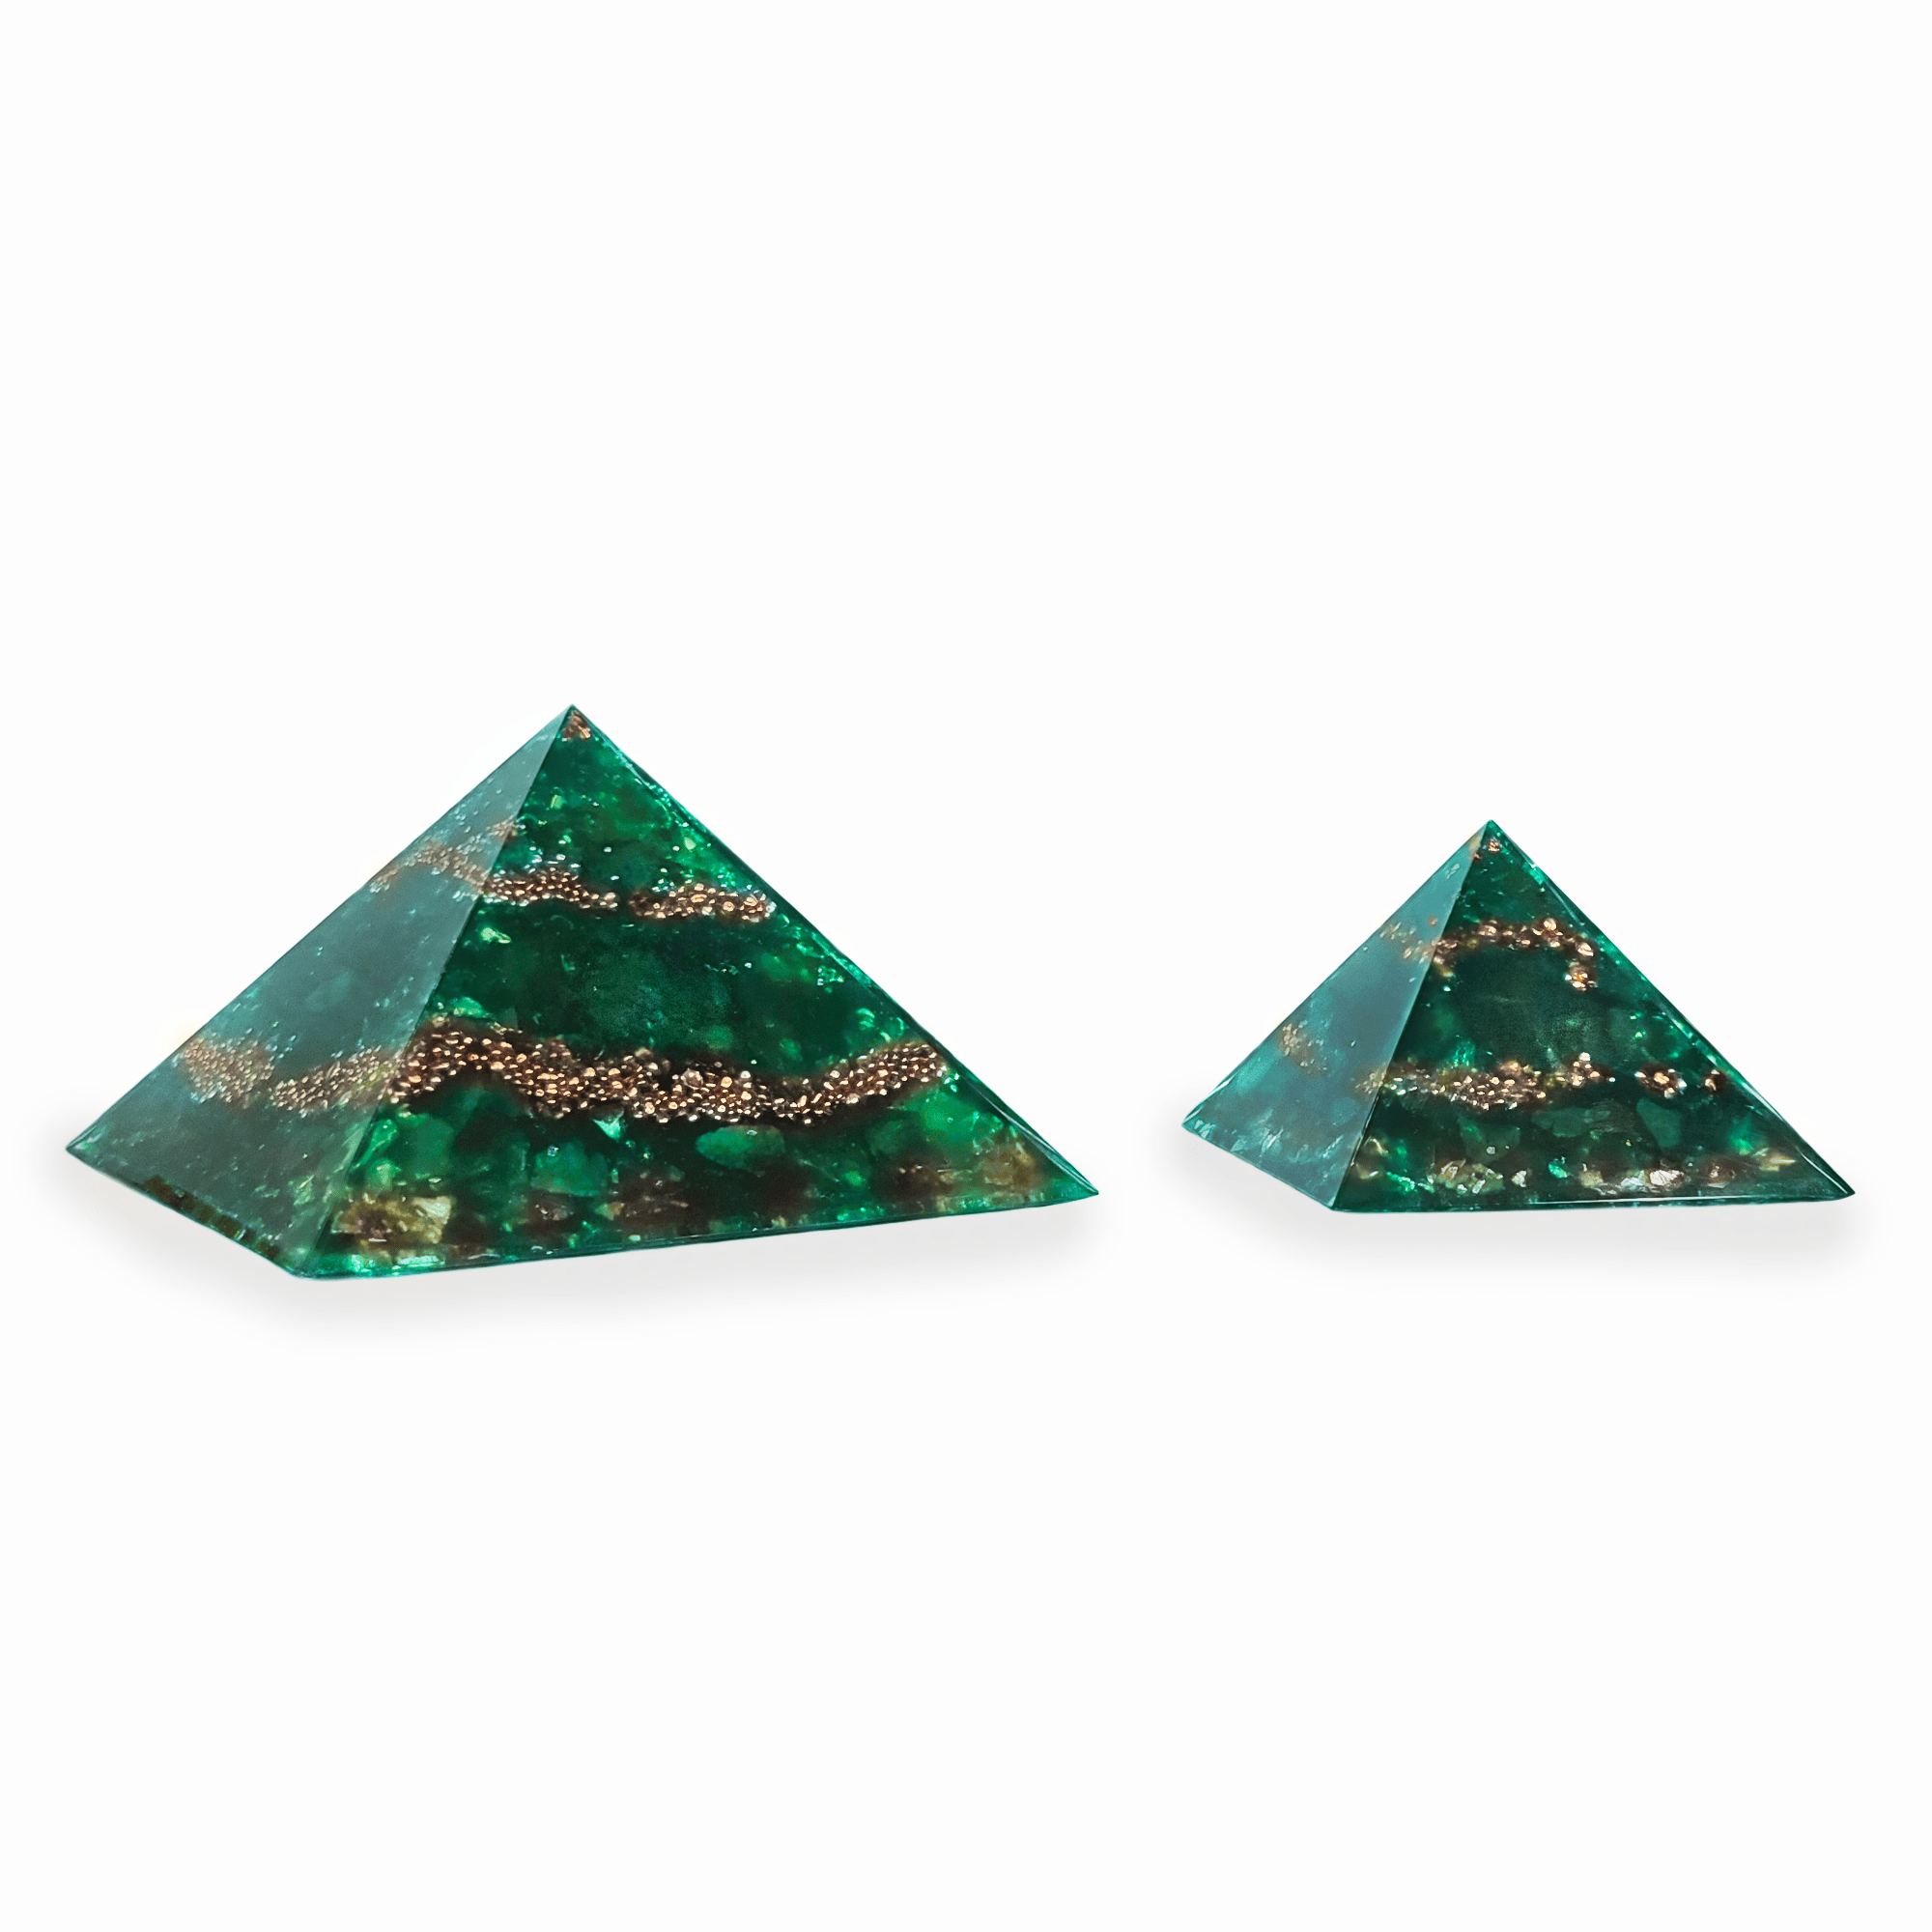 Eine große XXL Orgonit Pyramide, sowie ein mittelgroßer Orgonit mit den Edelsteinen Smaragd, Peridot & grünem Opal. Die Orgoniten sind grün mit goldenen Metallelementen.